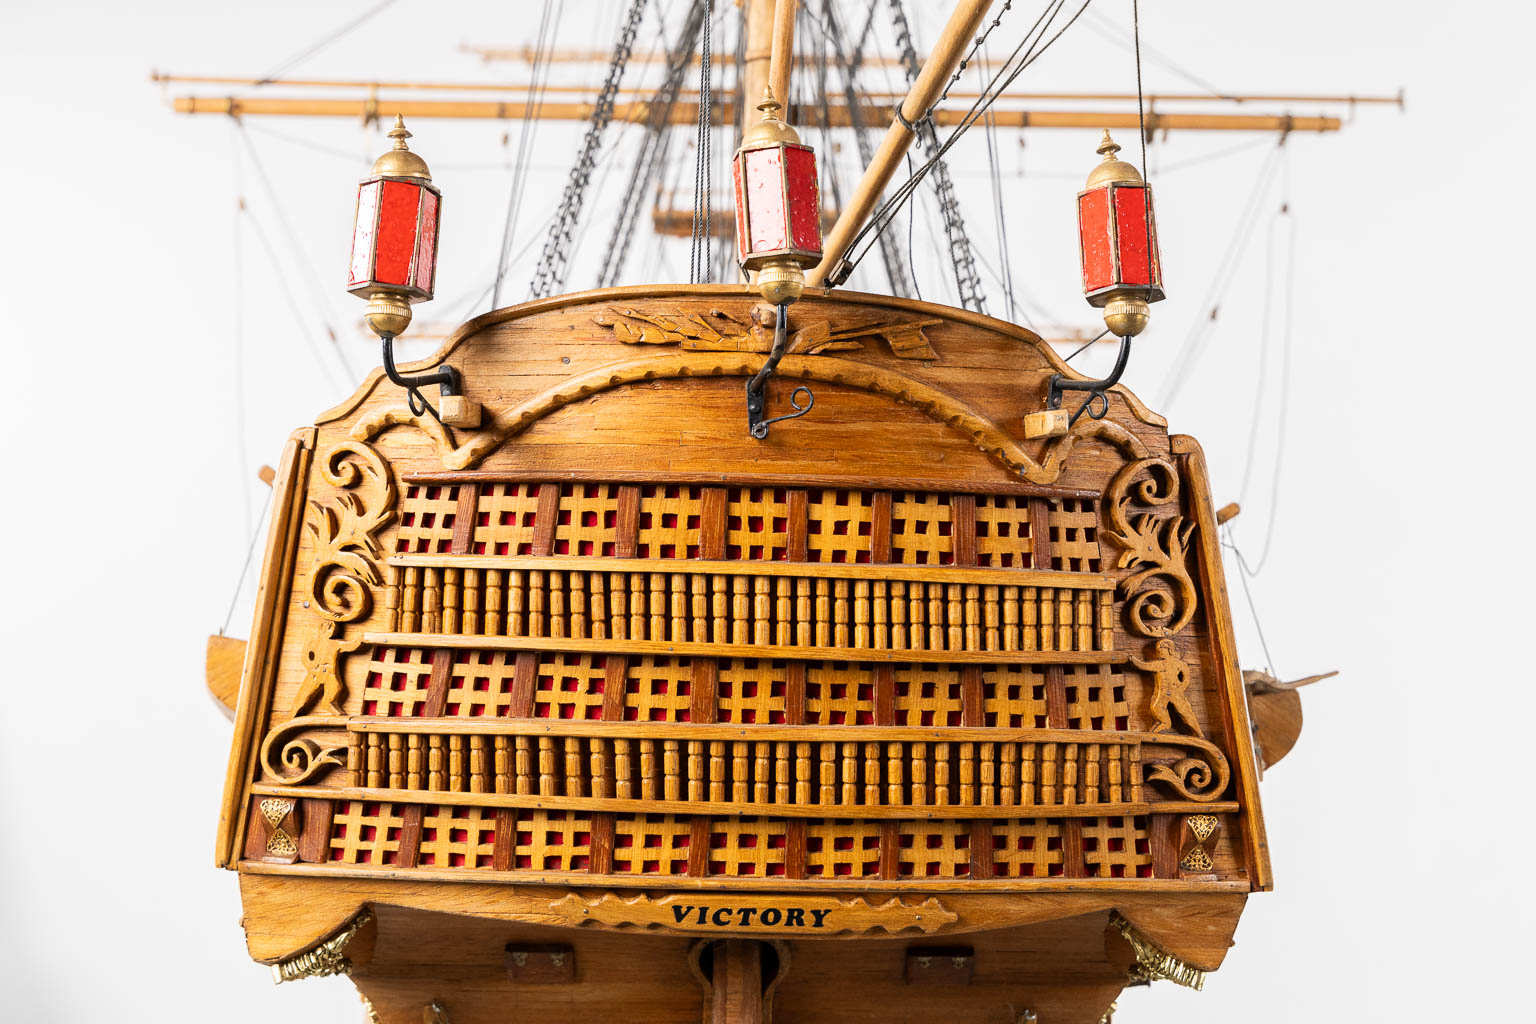 H.M.S. Victory, een groot en decoratief, handgemaakt schip. (L:56 x W:320 x H:285 cm)